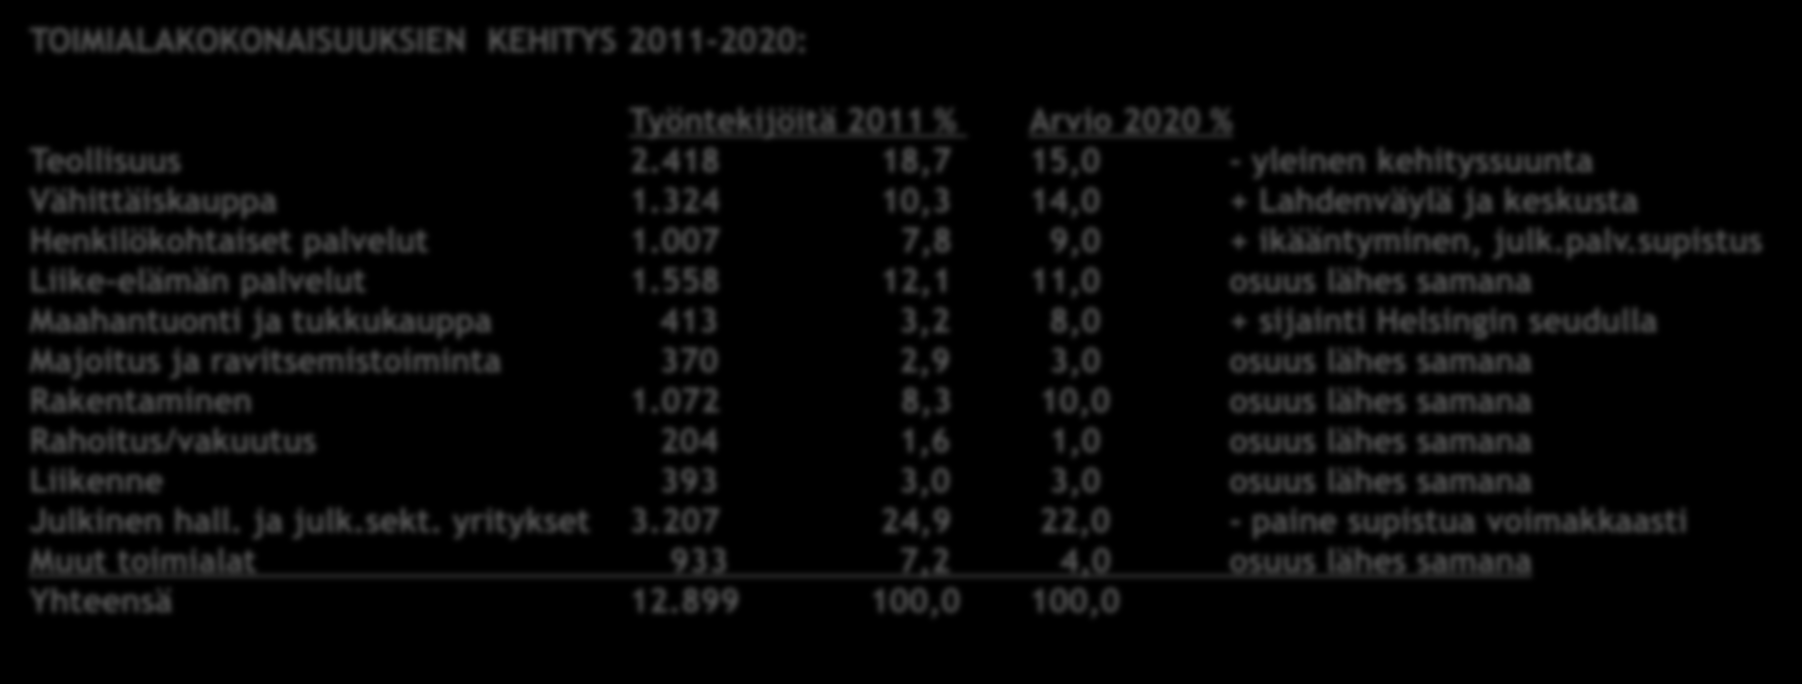 Järvenpään kaupungin yritysprofiili TOIMIALAKOKONAISUUKSIEN KEHITYS 2011-2020: Päivitetty 23.8.2012 Työntekijöitä 2011 % Arvio 2020 % Teollisuus 2.